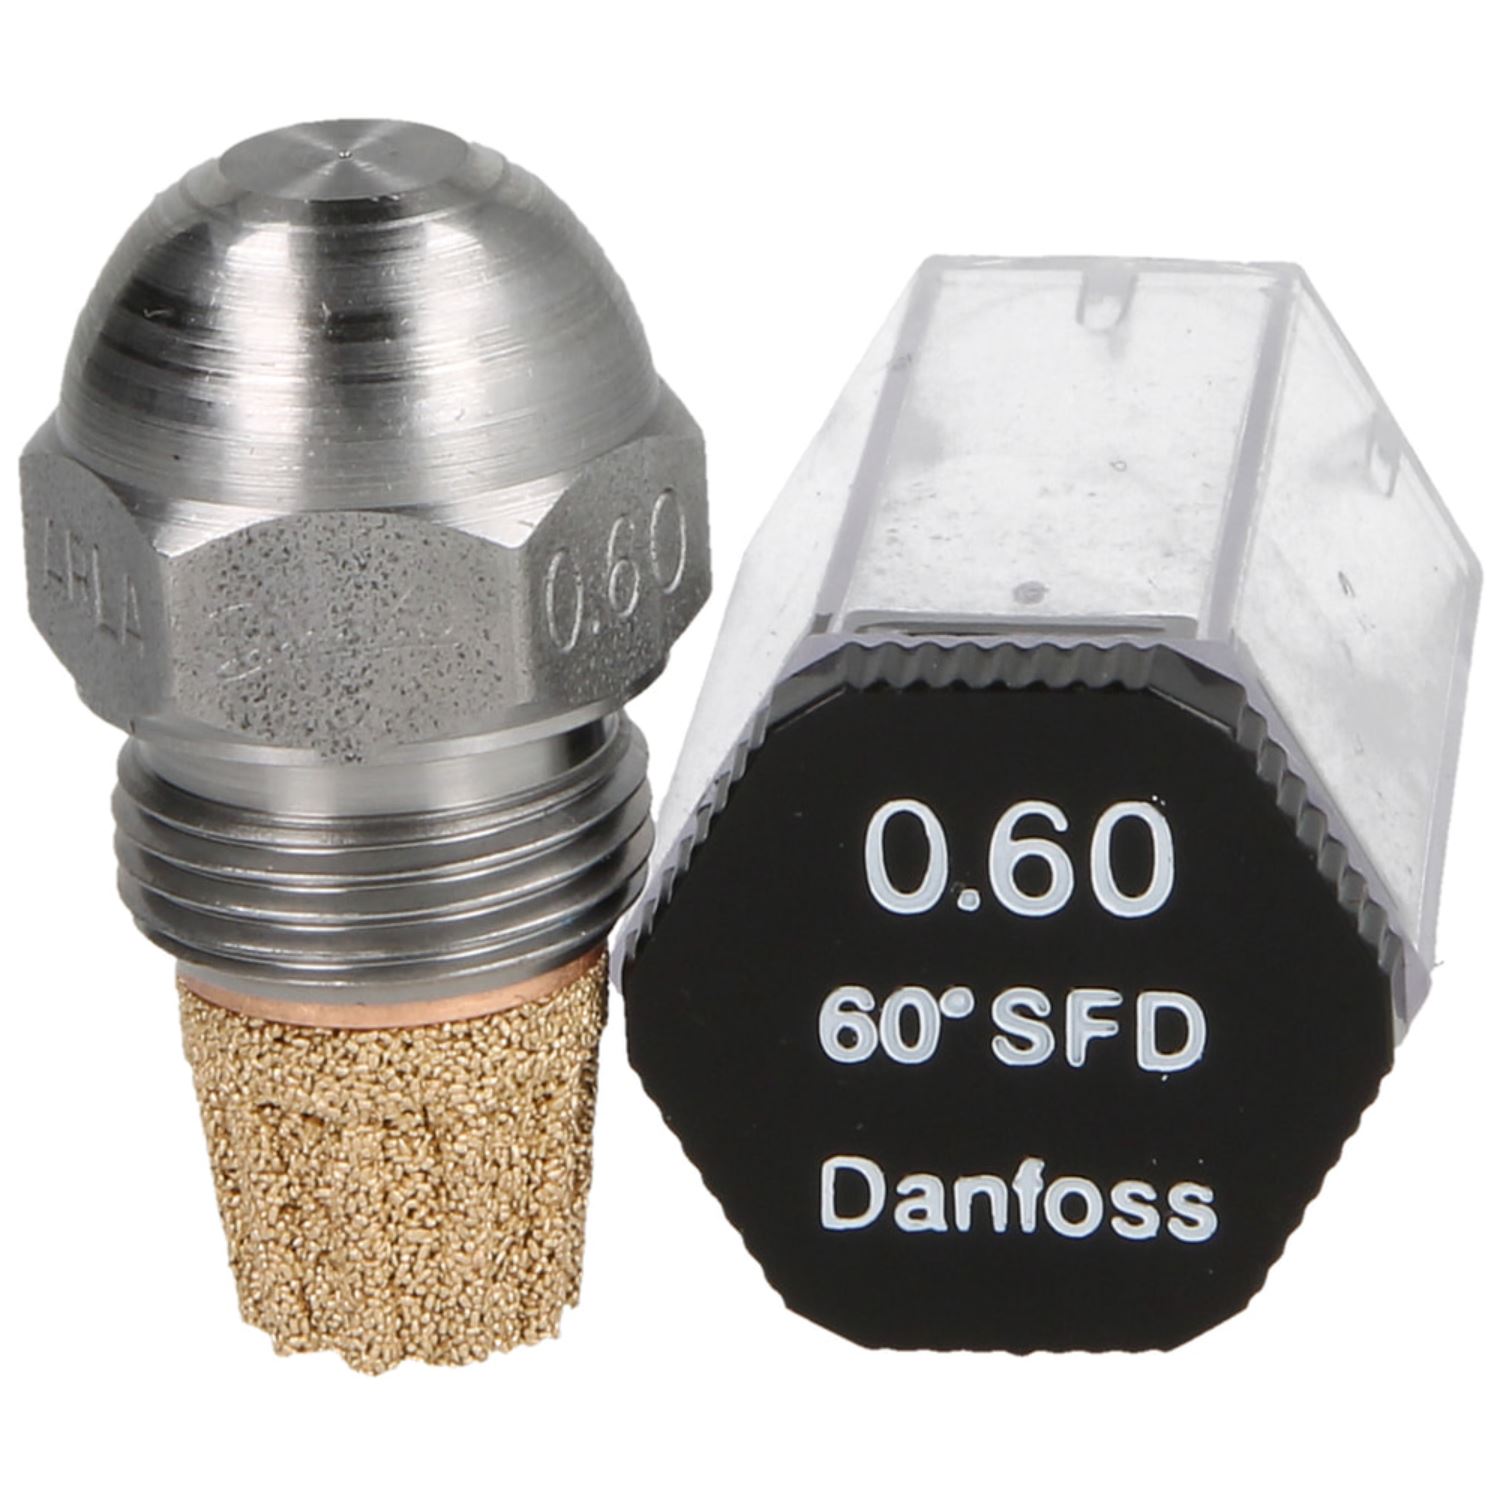 Danfoss-Öldüse 0,60 60°SF-D